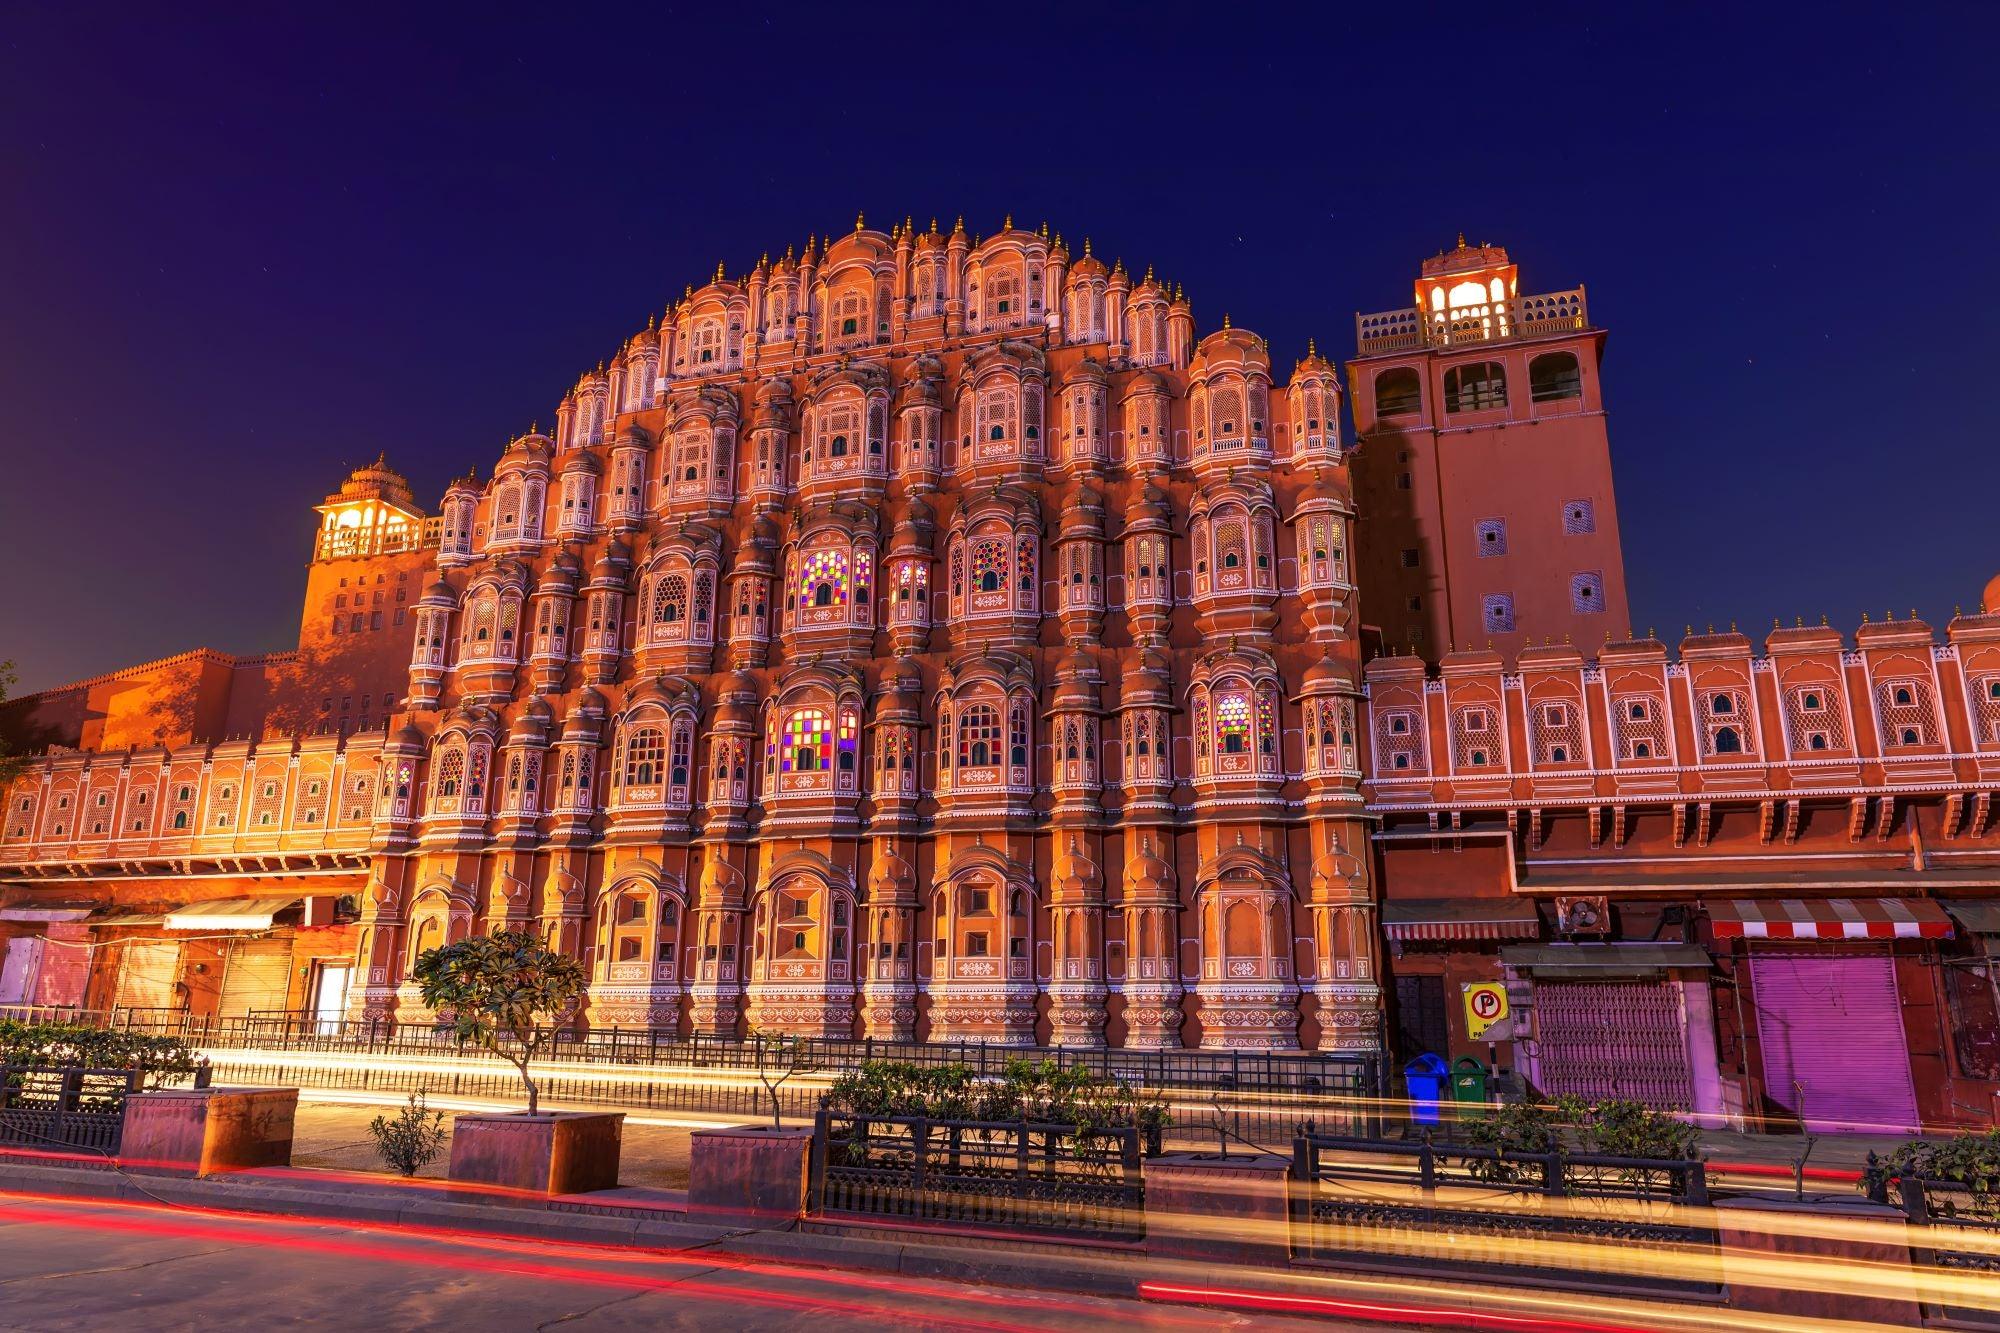 Jaipur, Rajasthan - The Heritage Artifacts